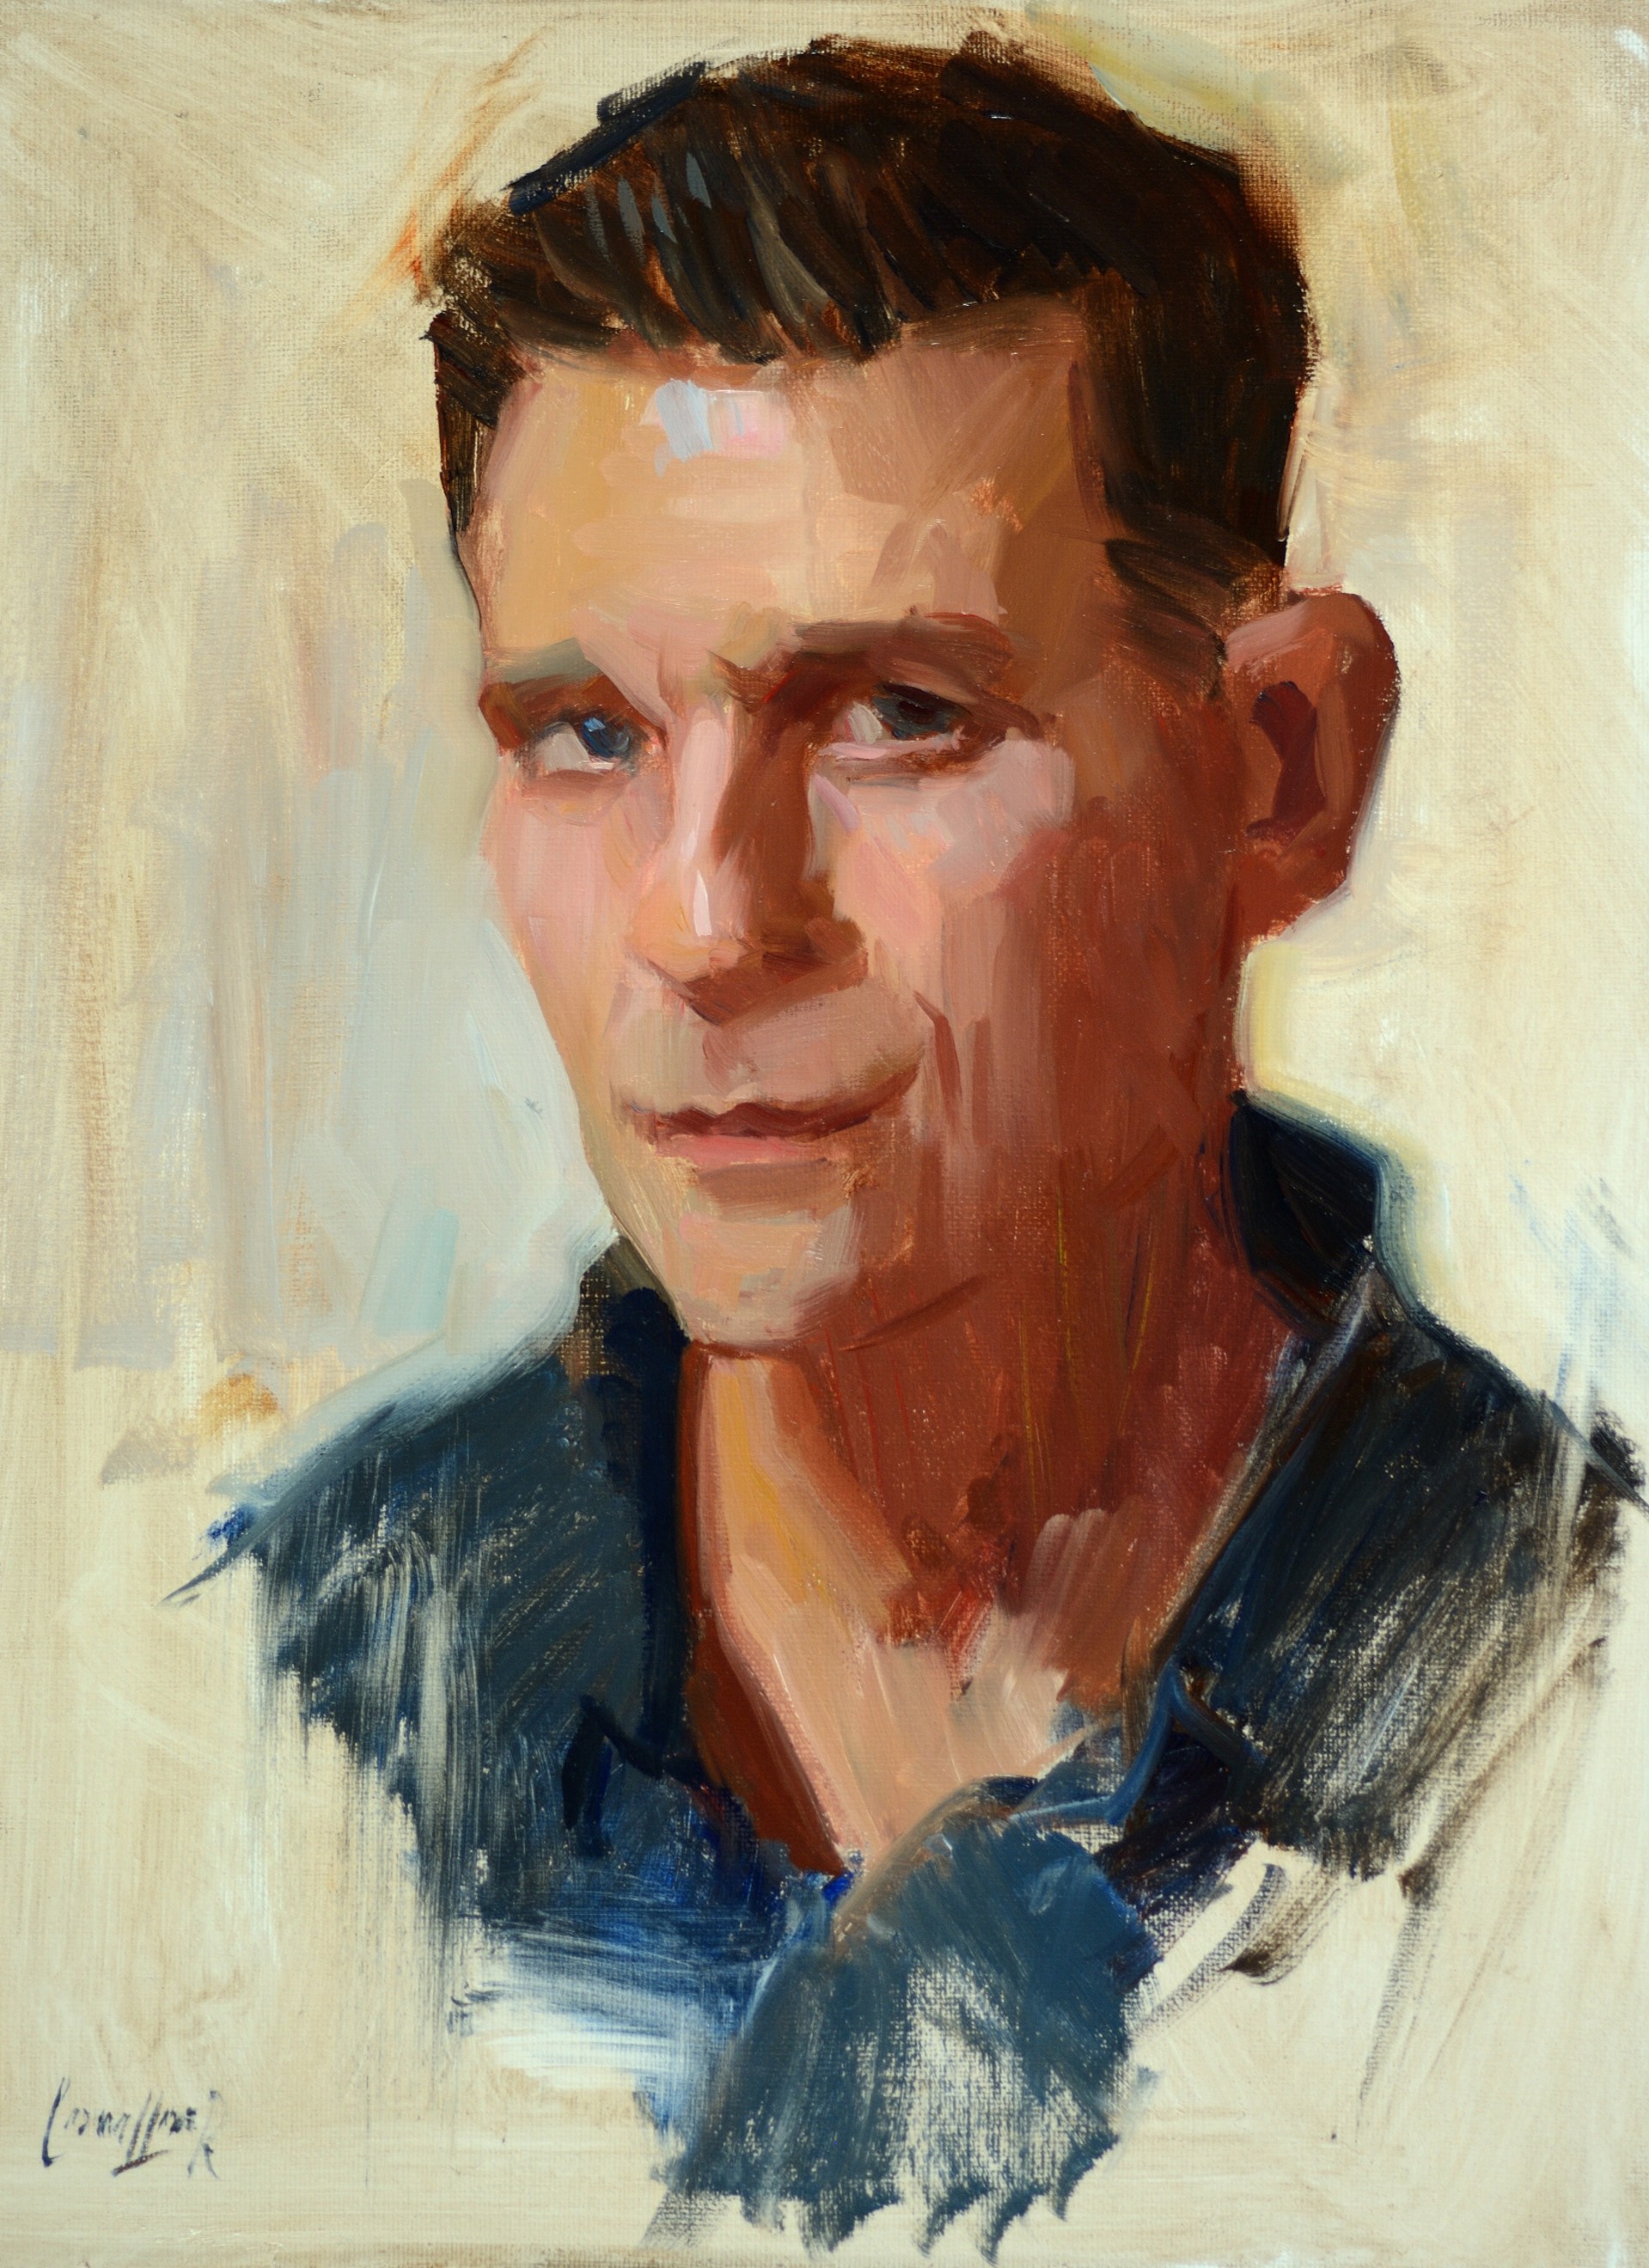 Portrait of Matt by Ken Cadwallader